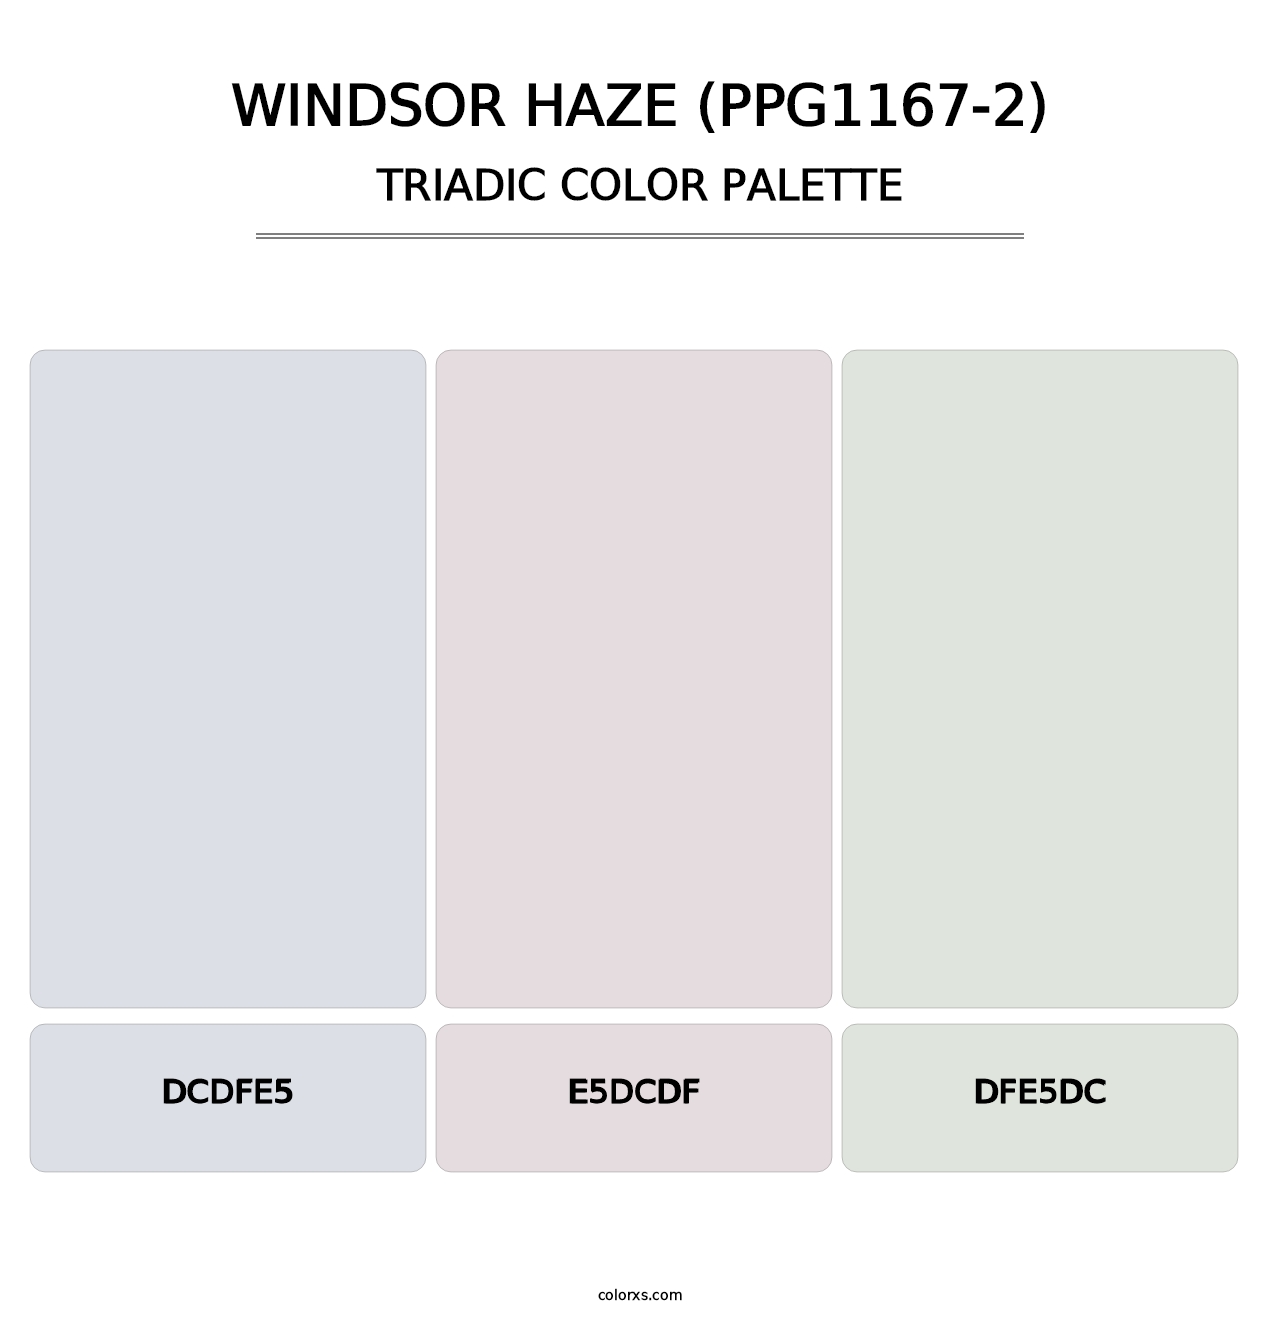 Windsor Haze (PPG1167-2) - Triadic Color Palette